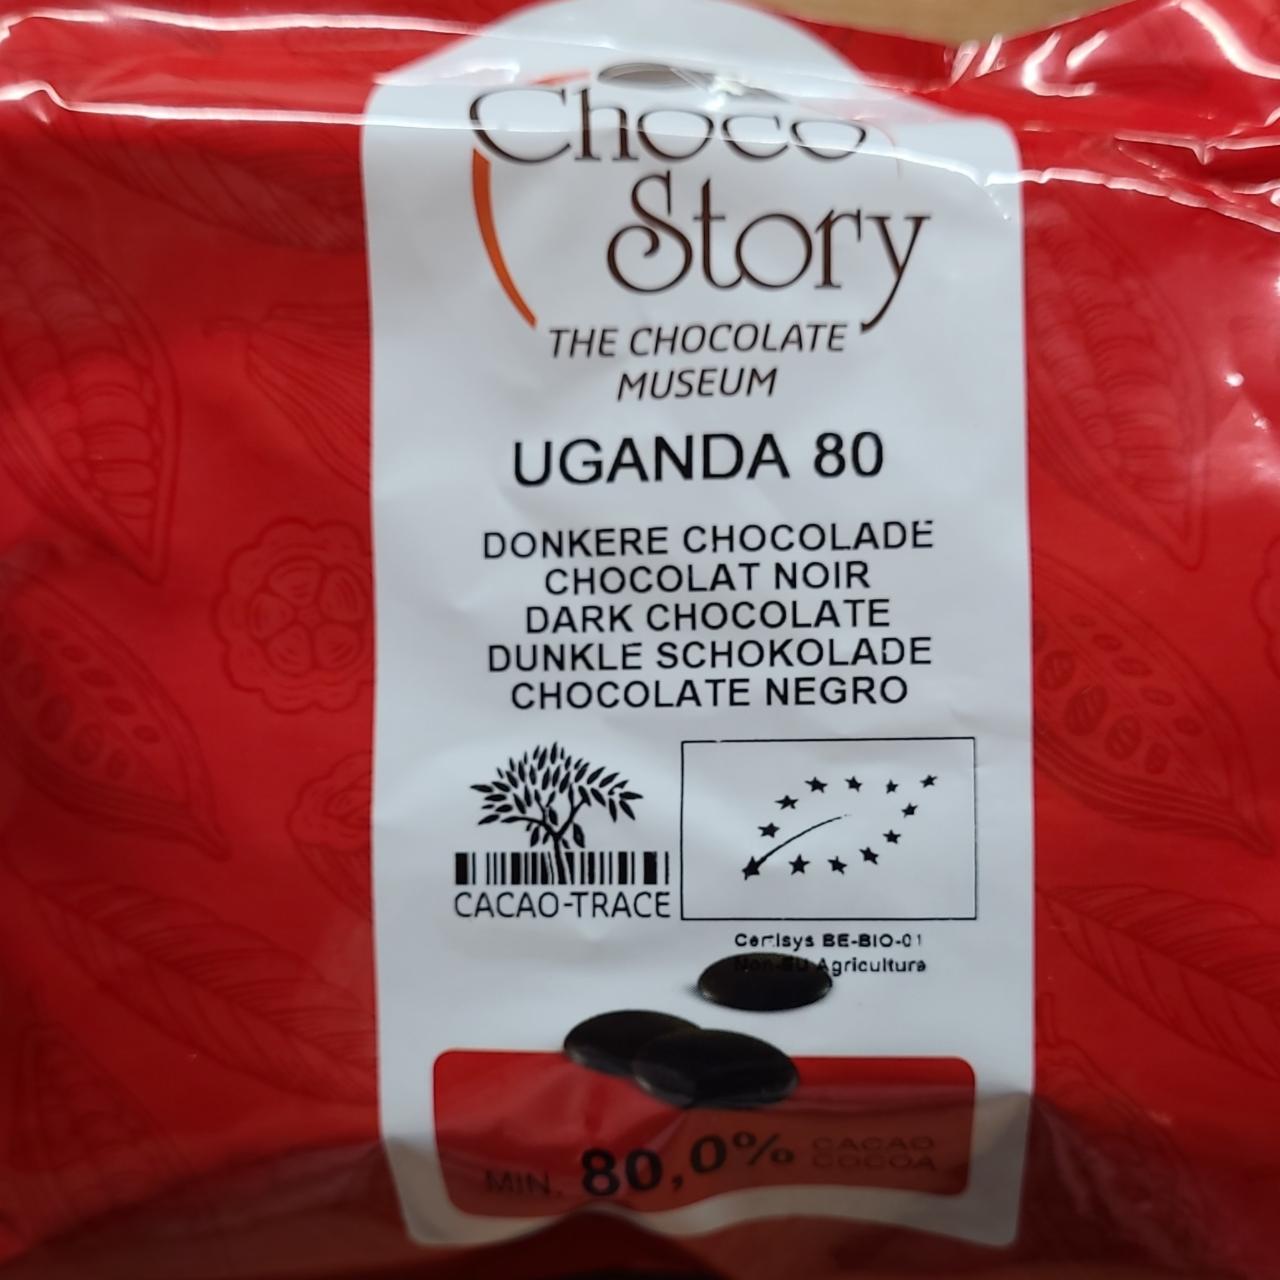 Fotografie - Uganda 80 dark chocolate Choco Story